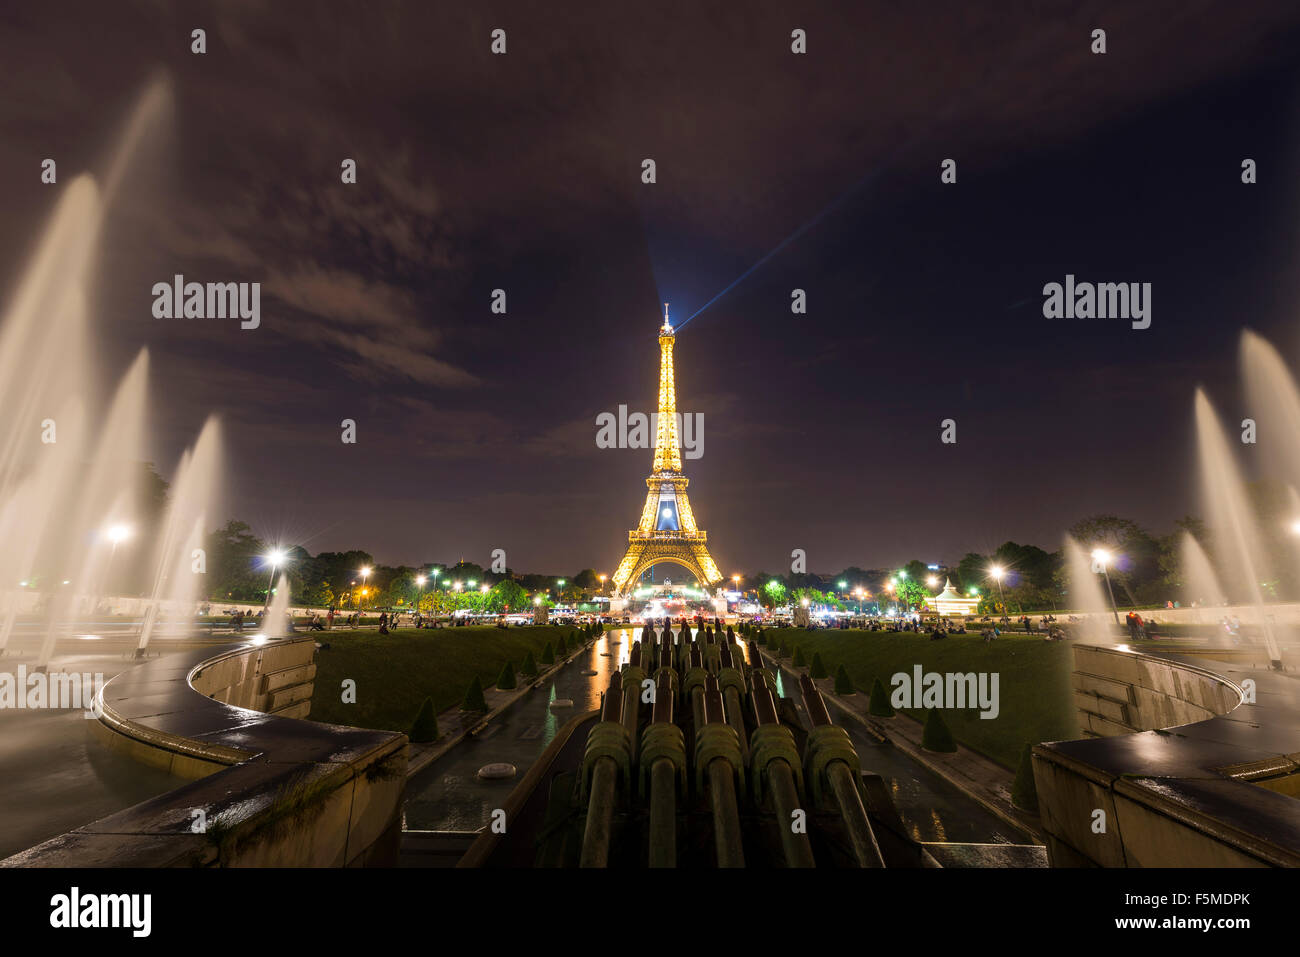 La Tour Eiffel illuminée la nuit, l'eau des fontaines au Trocadéro, Tour Eiffel, Paris, Ile-de-France, France Banque D'Images